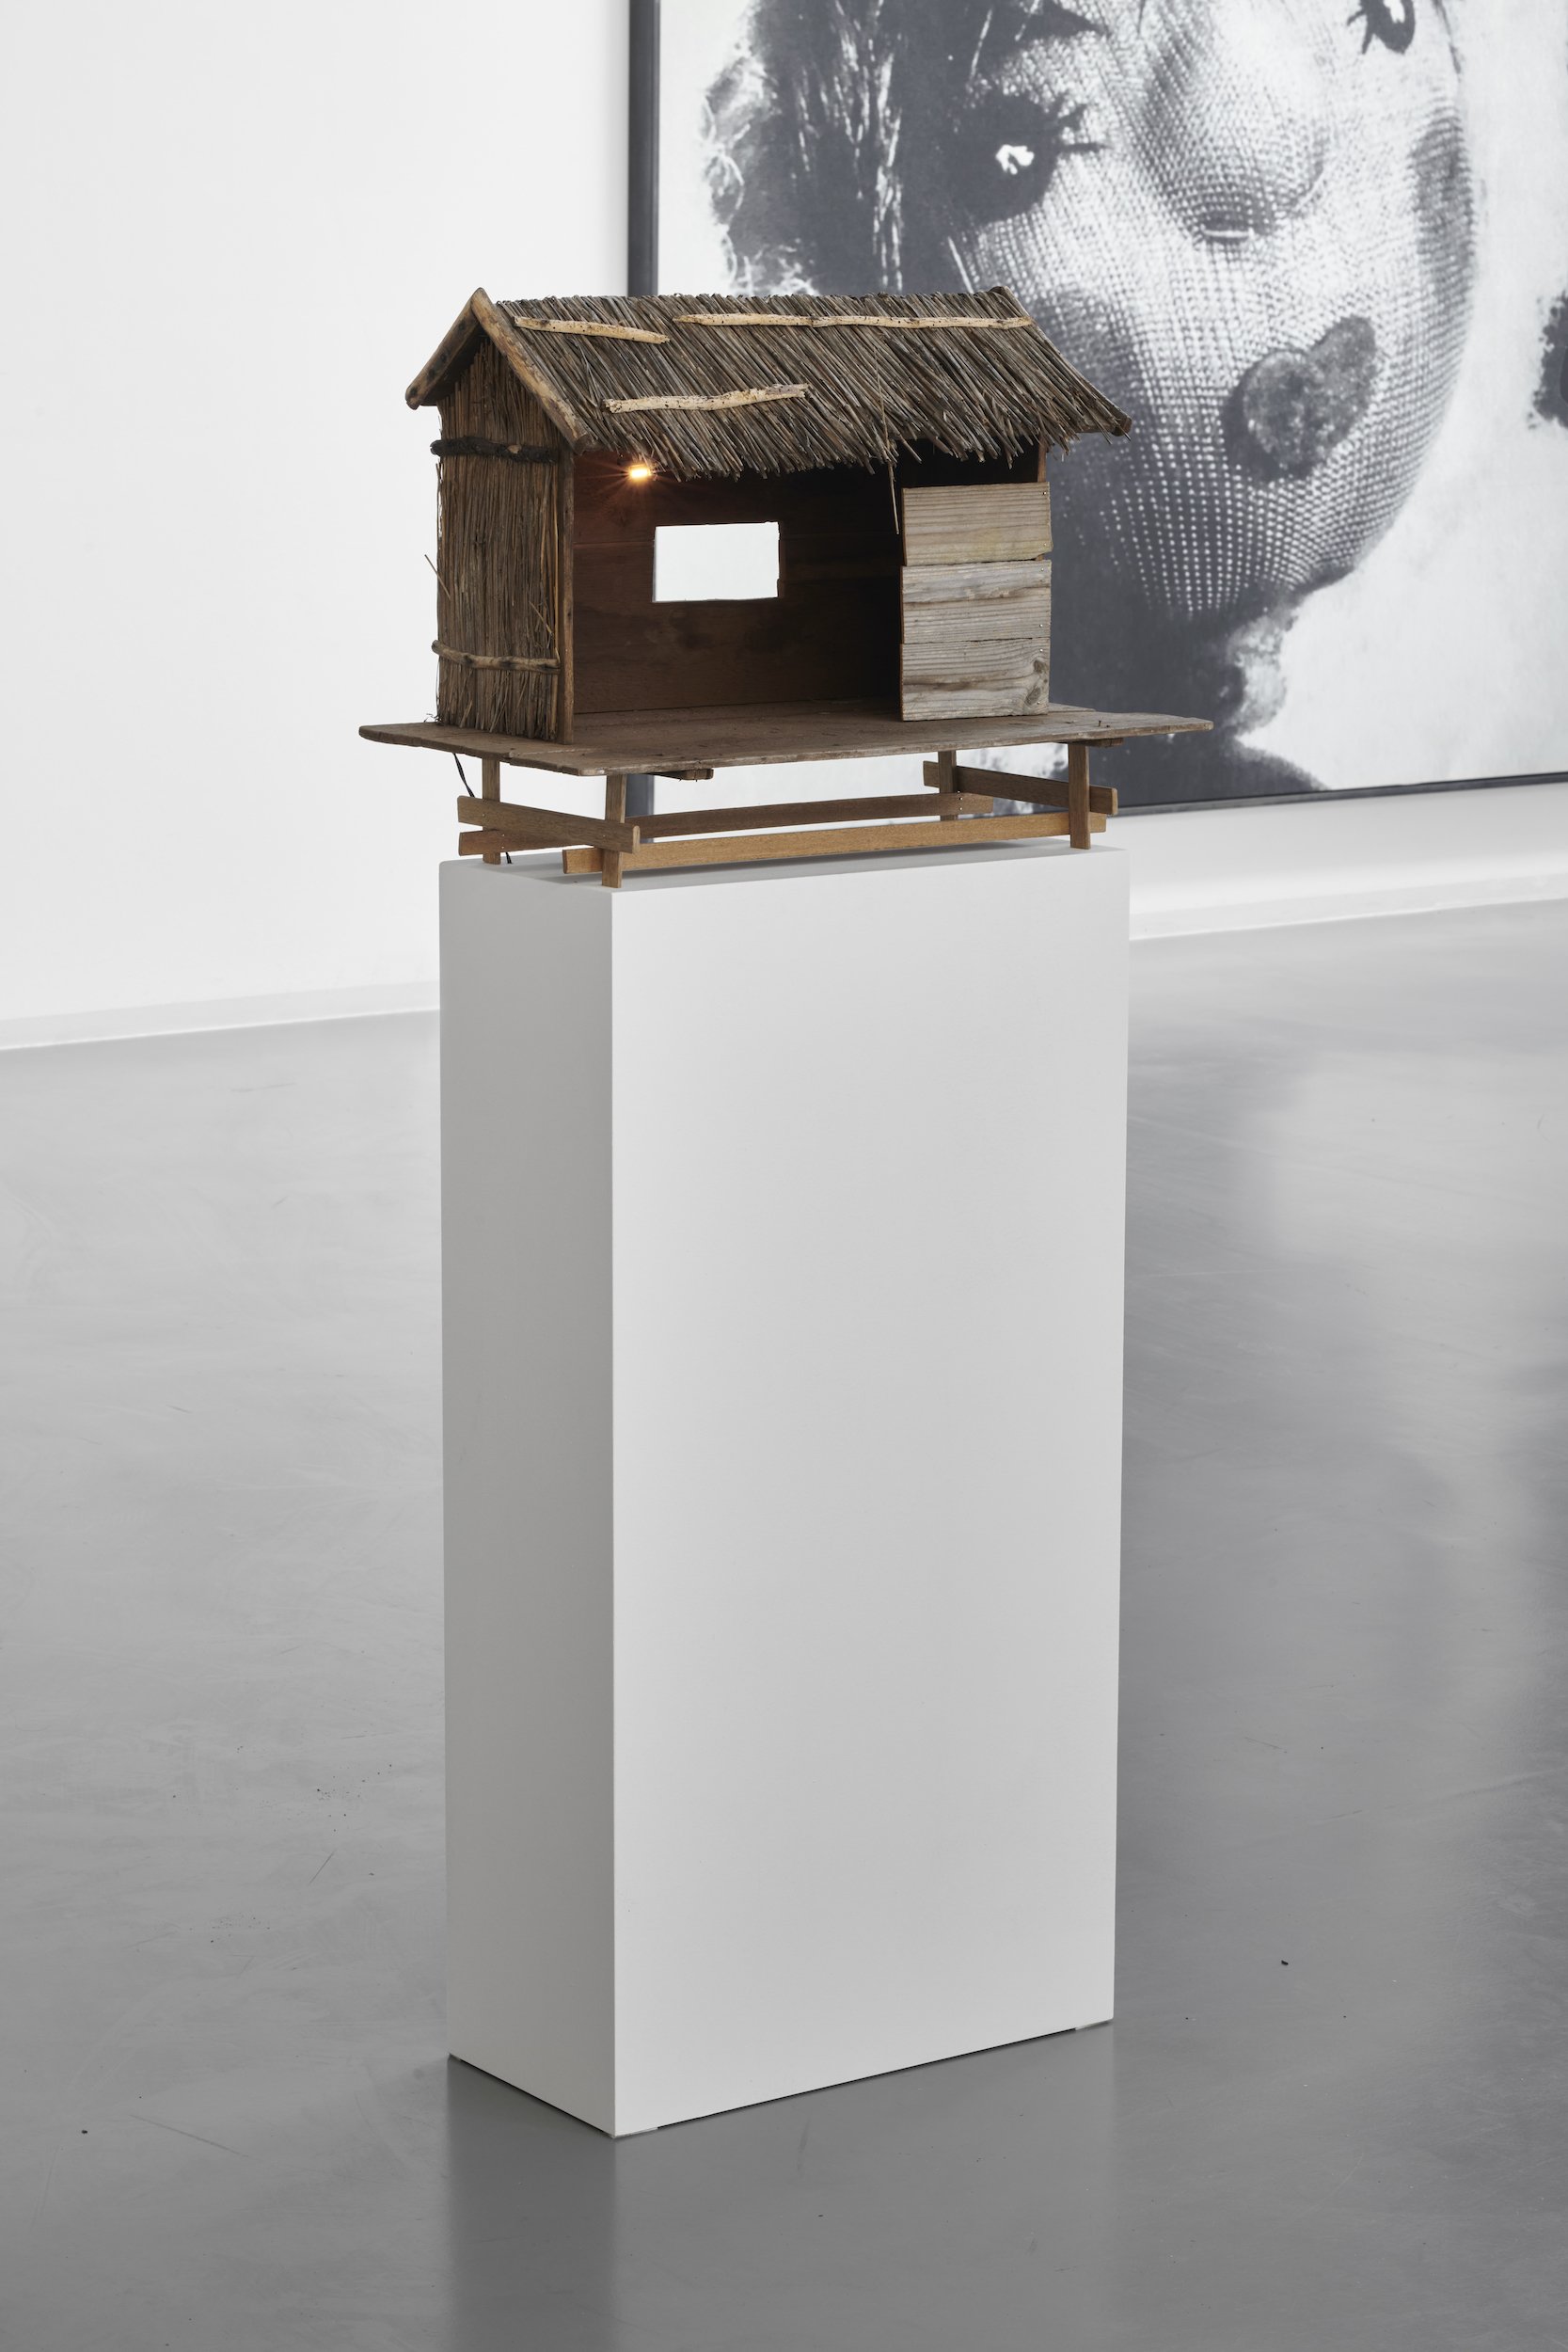 Michael Kleine, Hütte, 2015. Installationsansicht: The Holding Environment, Kapitel II, Bonner Kunstverein, 2021. Foto: Mareike Tocha. Courtesy der Künstler.